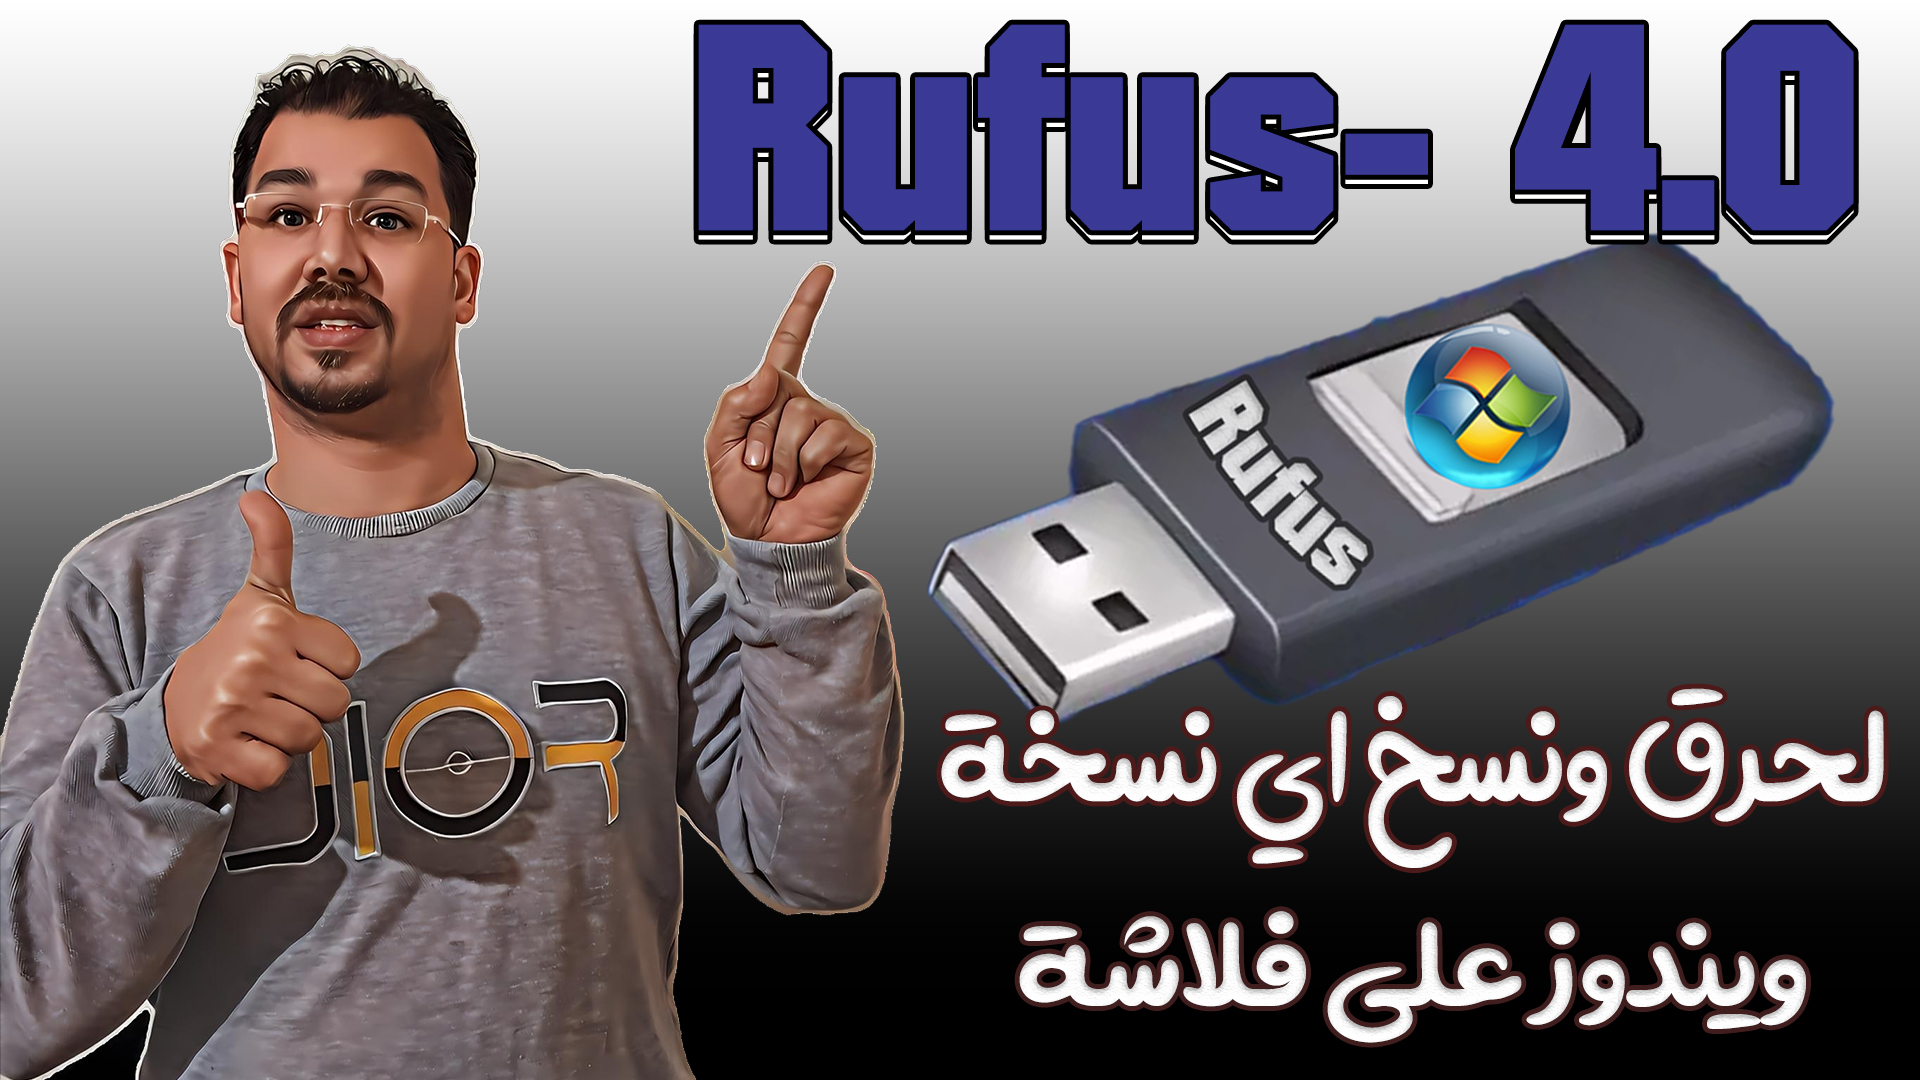 تحميل برنامج Rufus- 4.0 لحرق ونسخ الويندوز والاسطوانات وملفات الأيزو على فلاشة بكل سهولة وبدون مشاكل